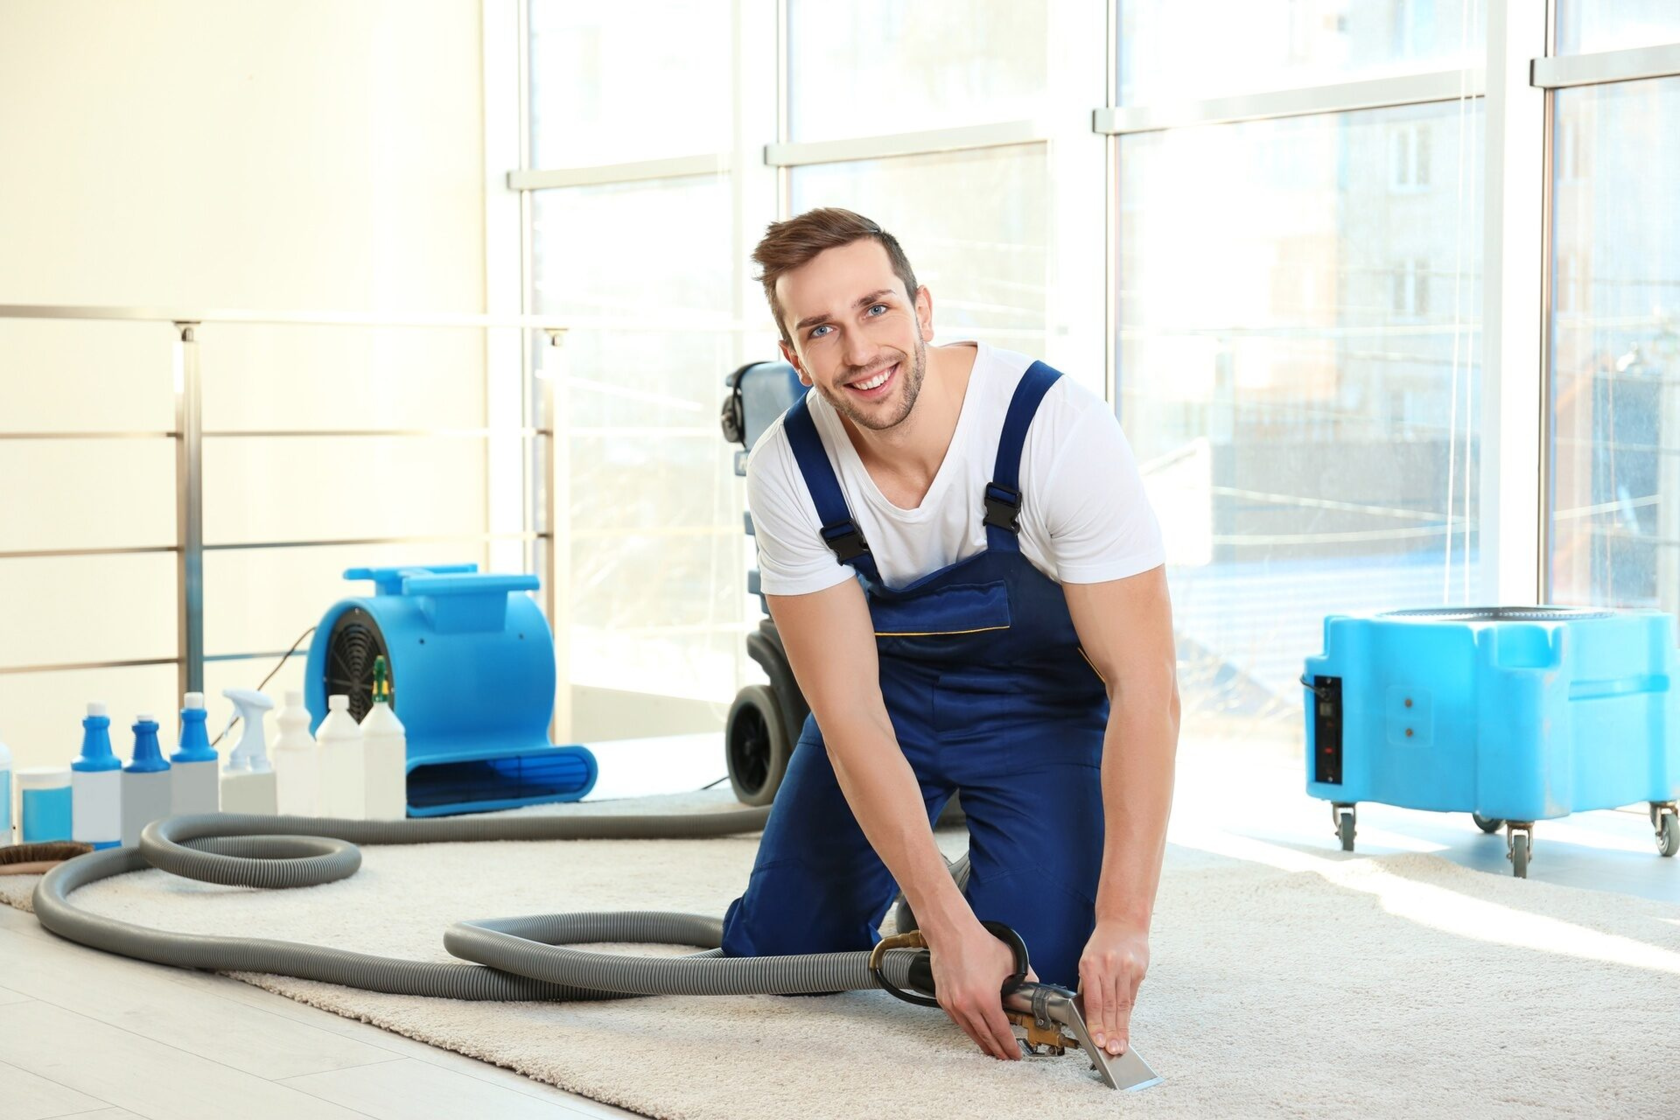 Чистка ковров как бизнес: предоставление профессиональных услуг